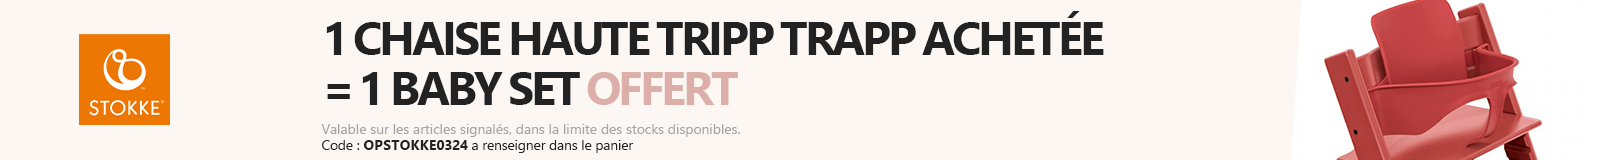 Stokke : Tripp Trapp = baby set offert